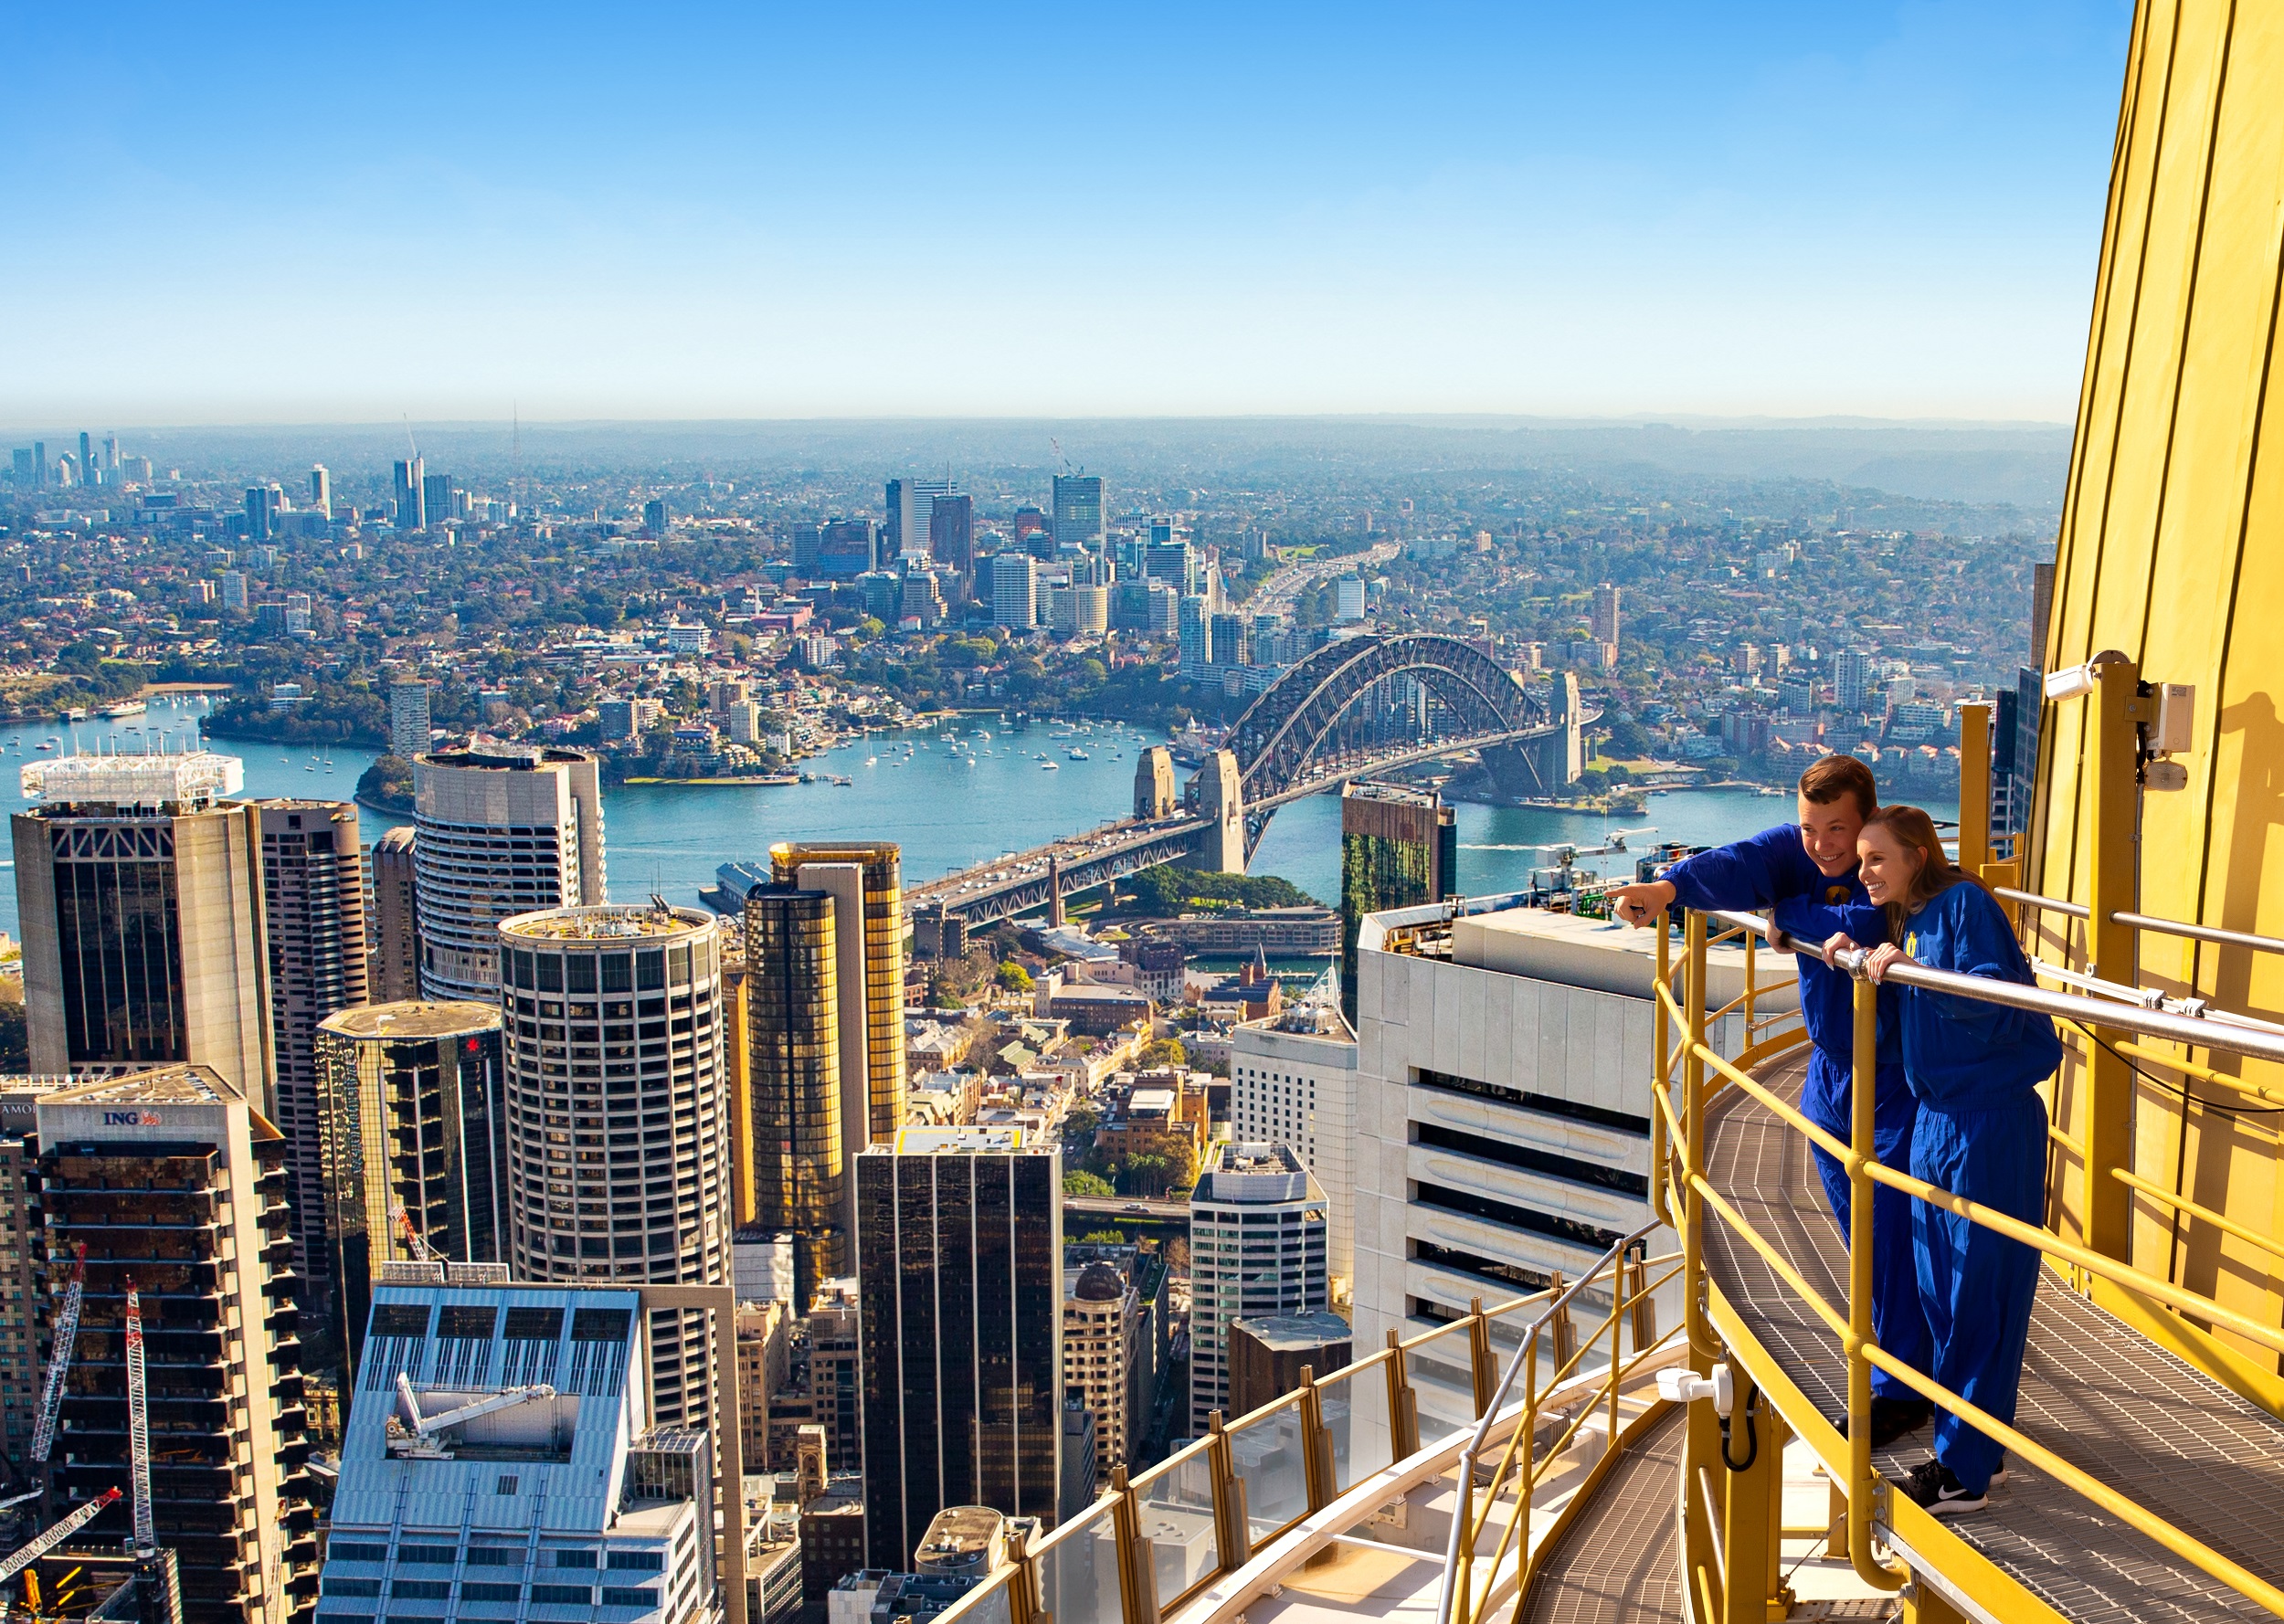 Sydney Tower Eye SKYWALK